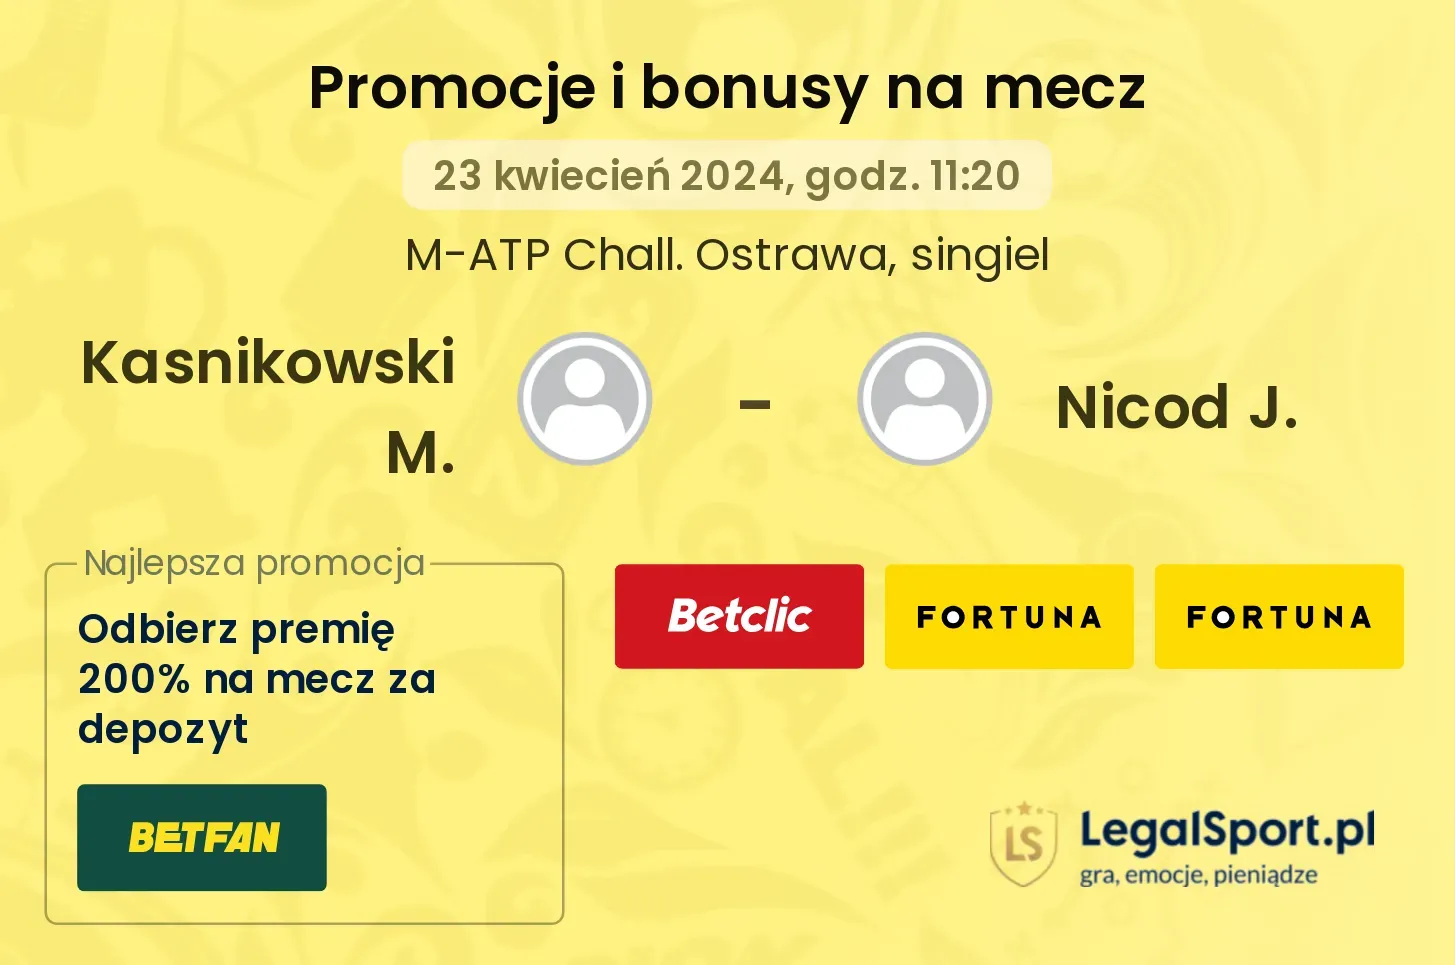 Kasnikowski M. - Nicod J. promocje bonusy na mecz